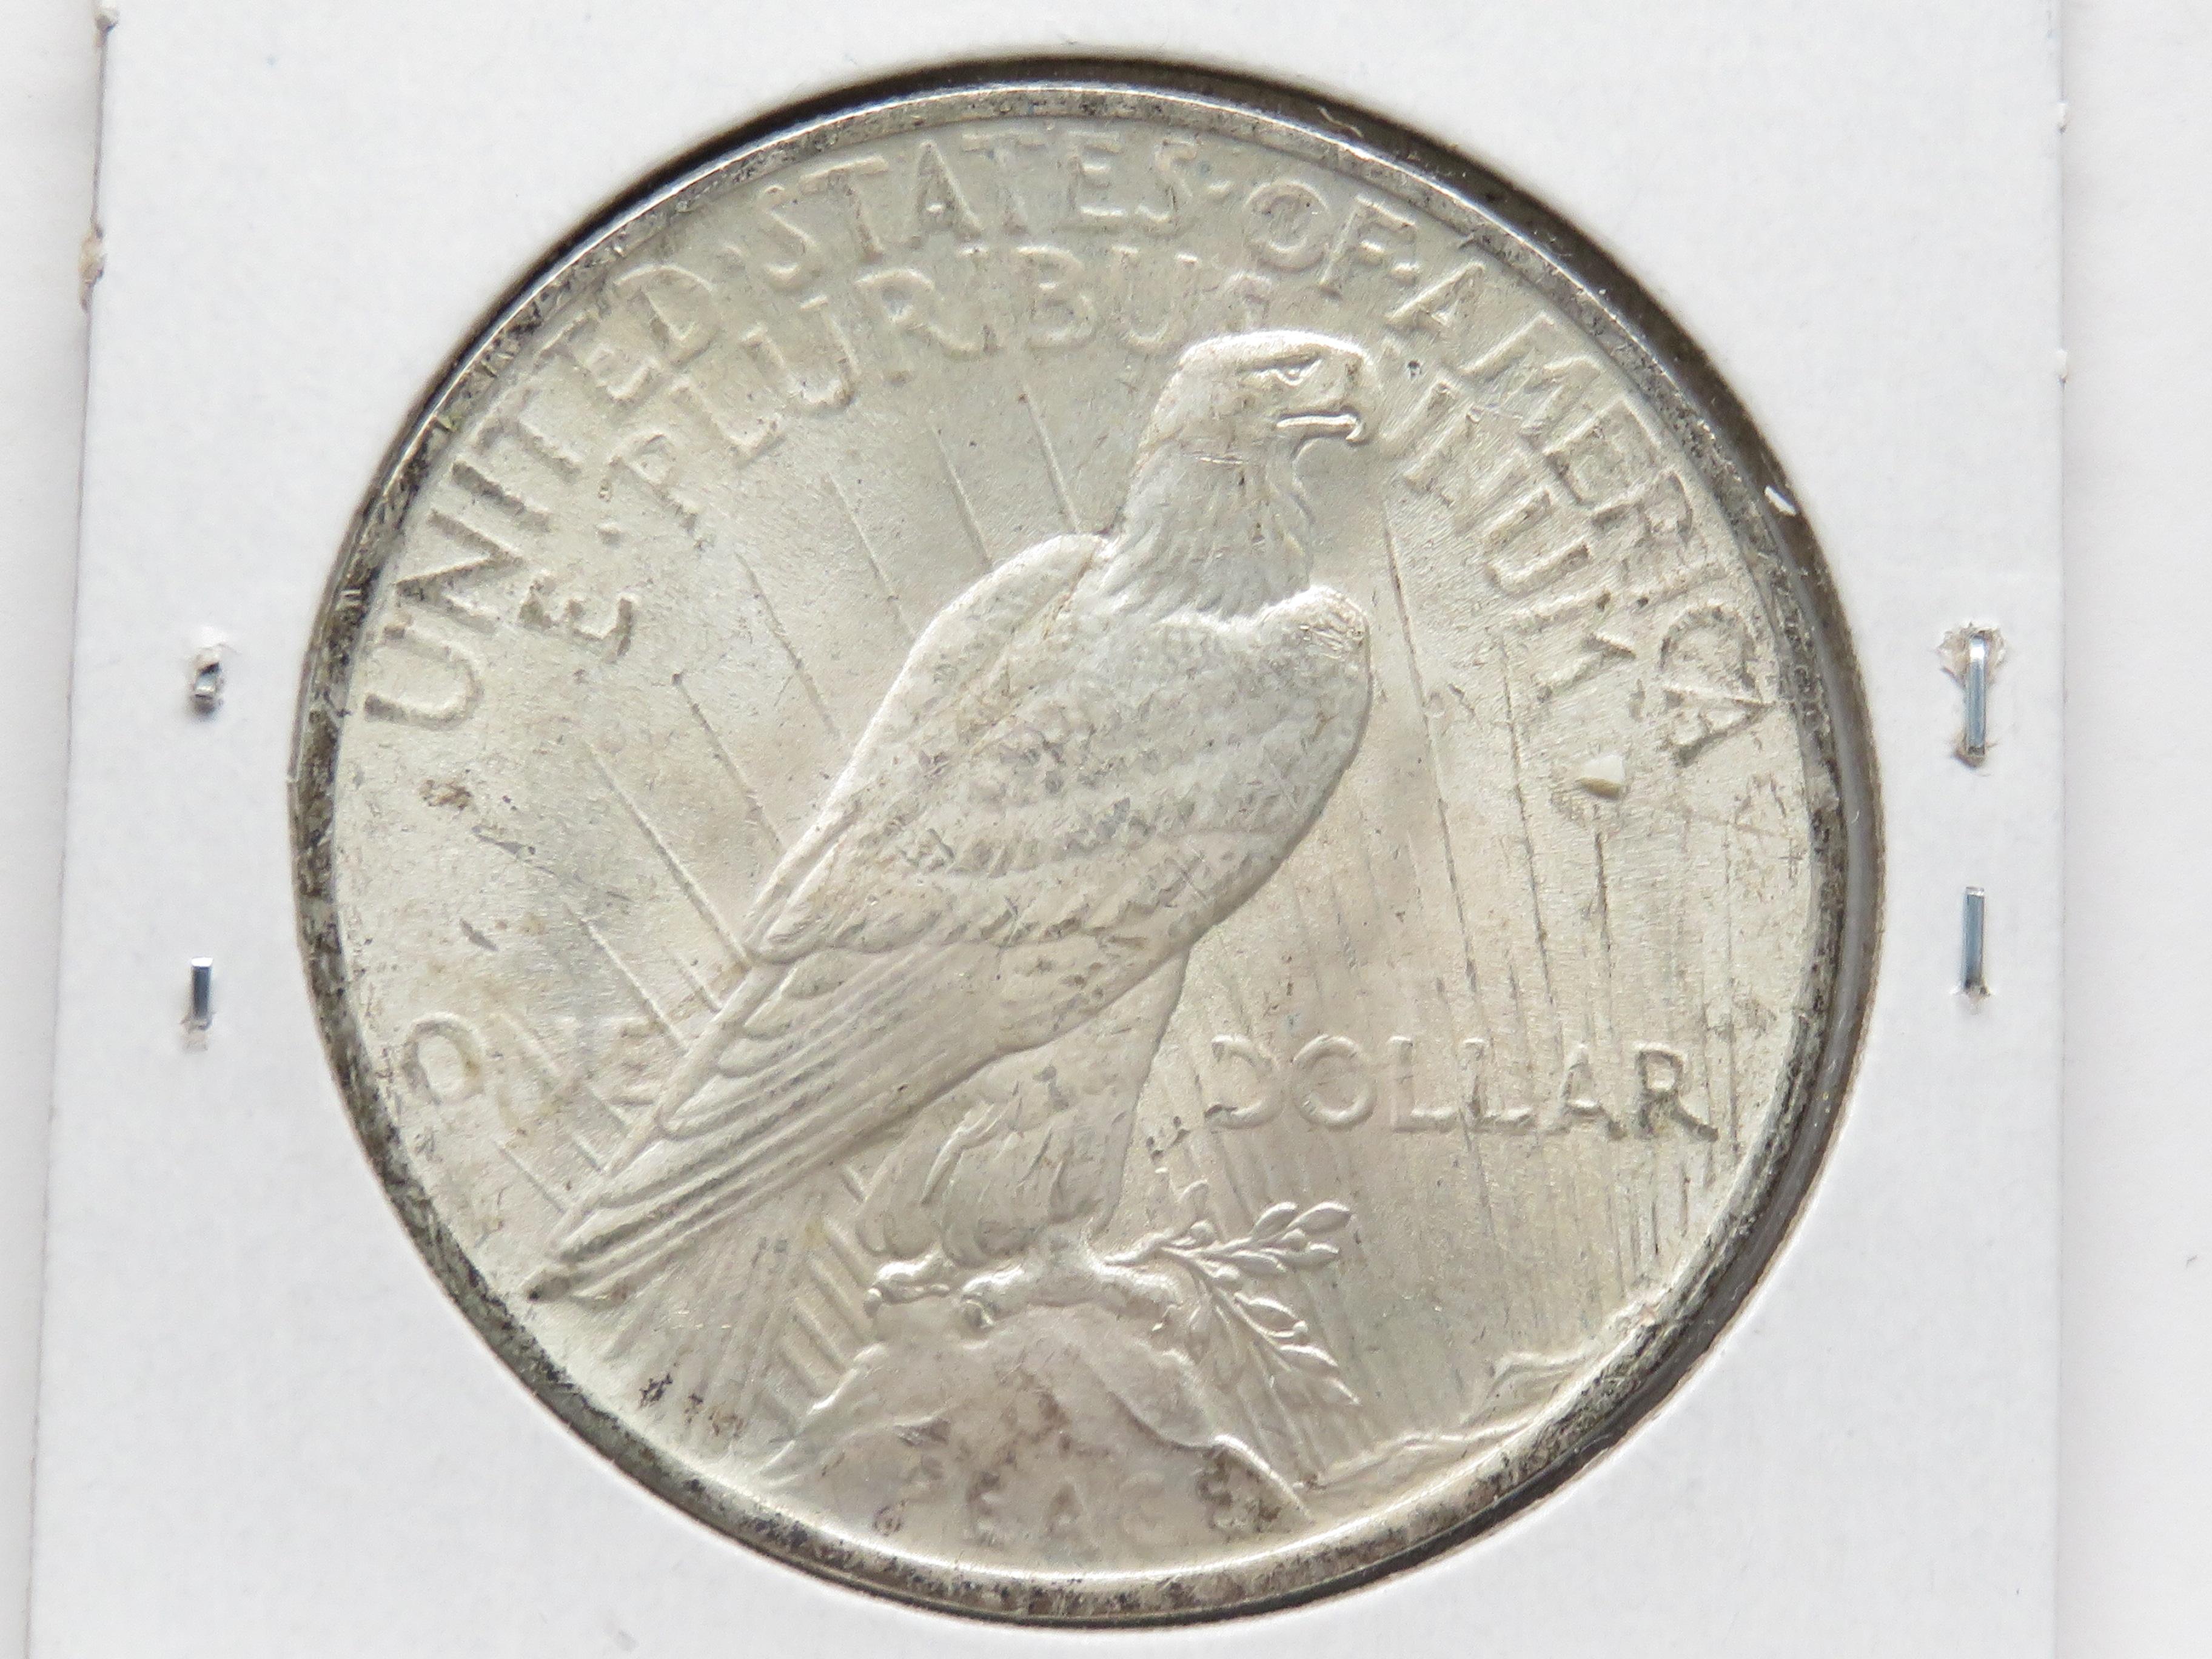 2 Peace $: 1923 Unc, 1925 AU